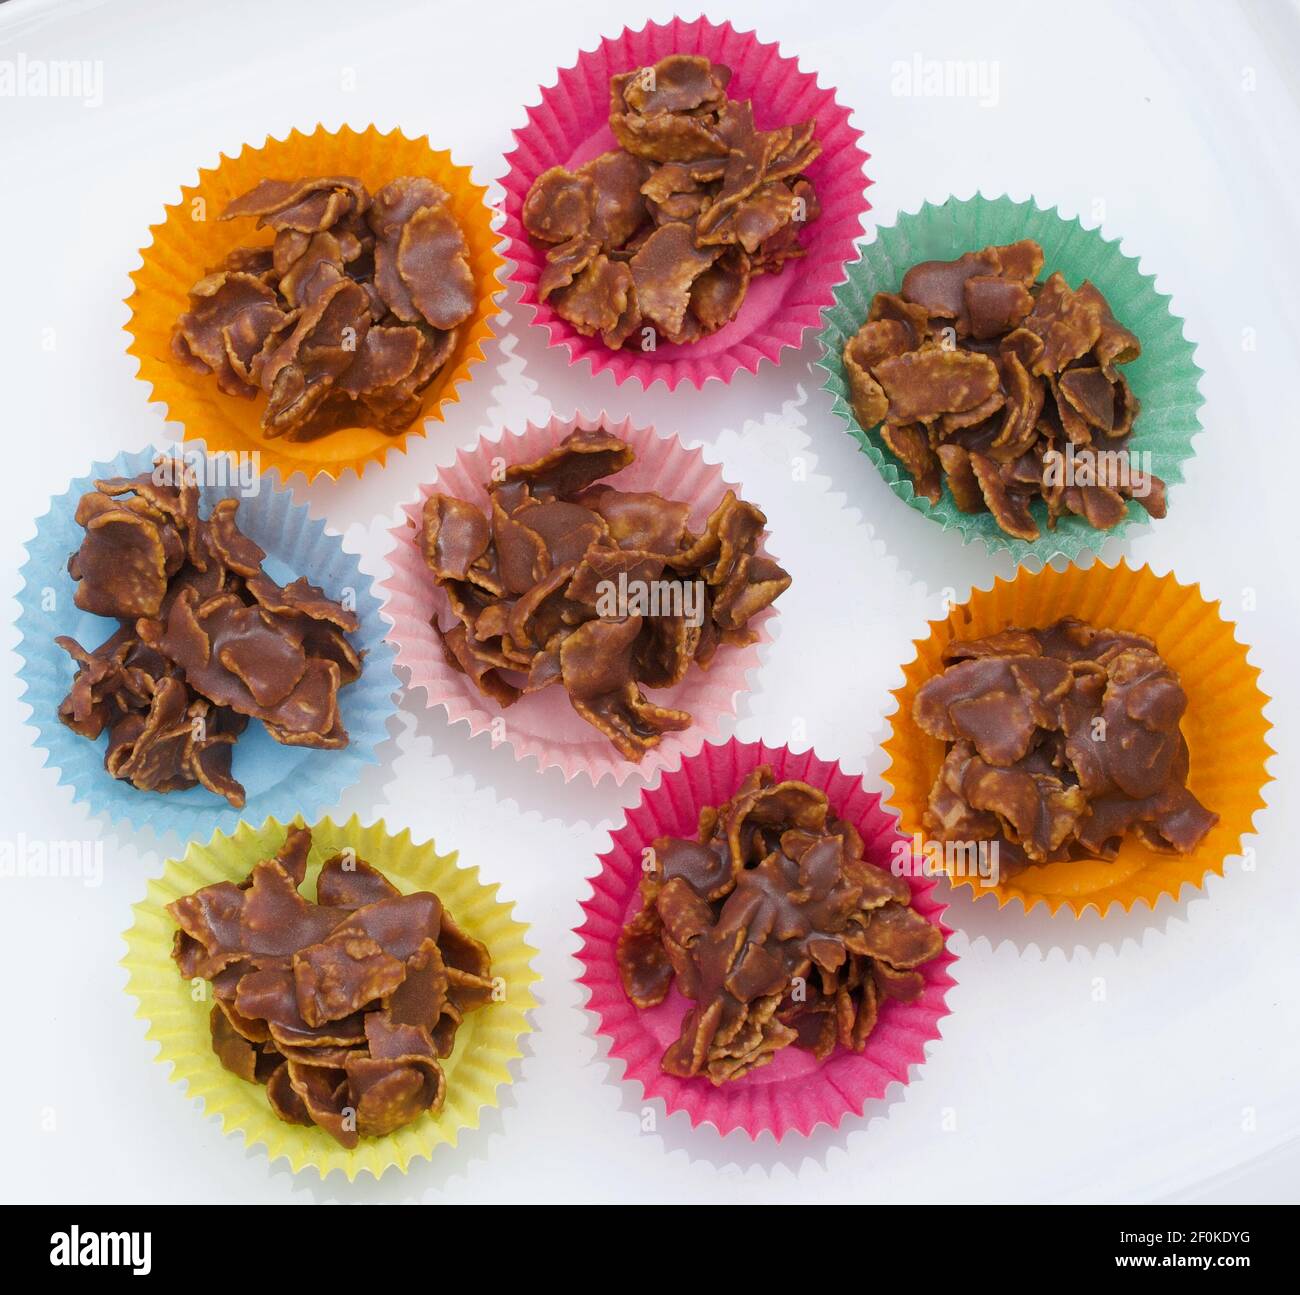 Schokolade knusprige Kuchen in farbigen Papierhüllen auf weißem Hintergrund Stockfoto